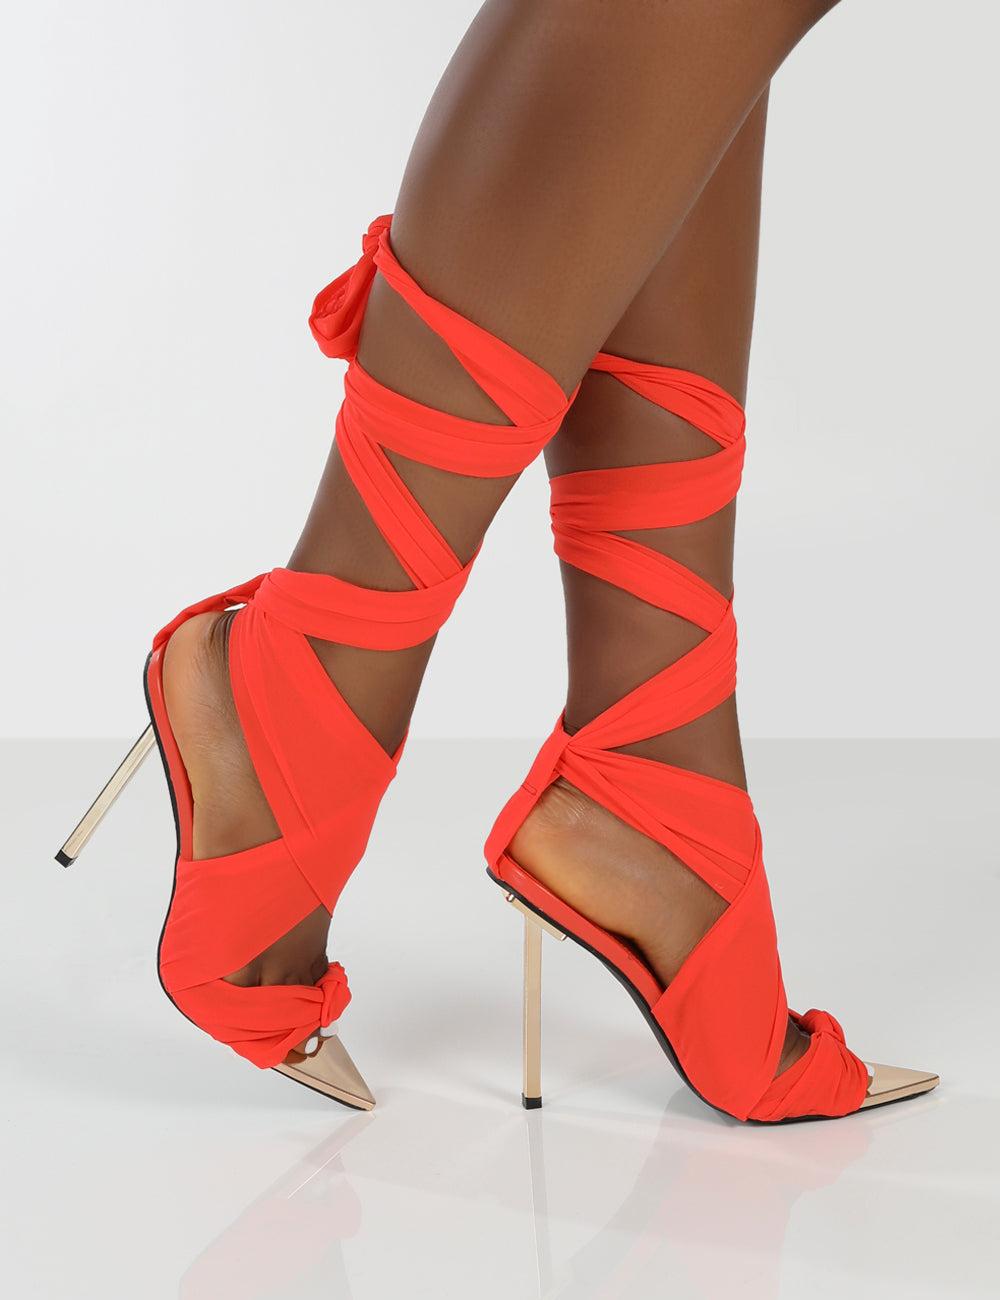 Sandals Heel Butterflies | Women's Shoes High Heels | Stiletto Heels Sandals  - High - Aliexpress